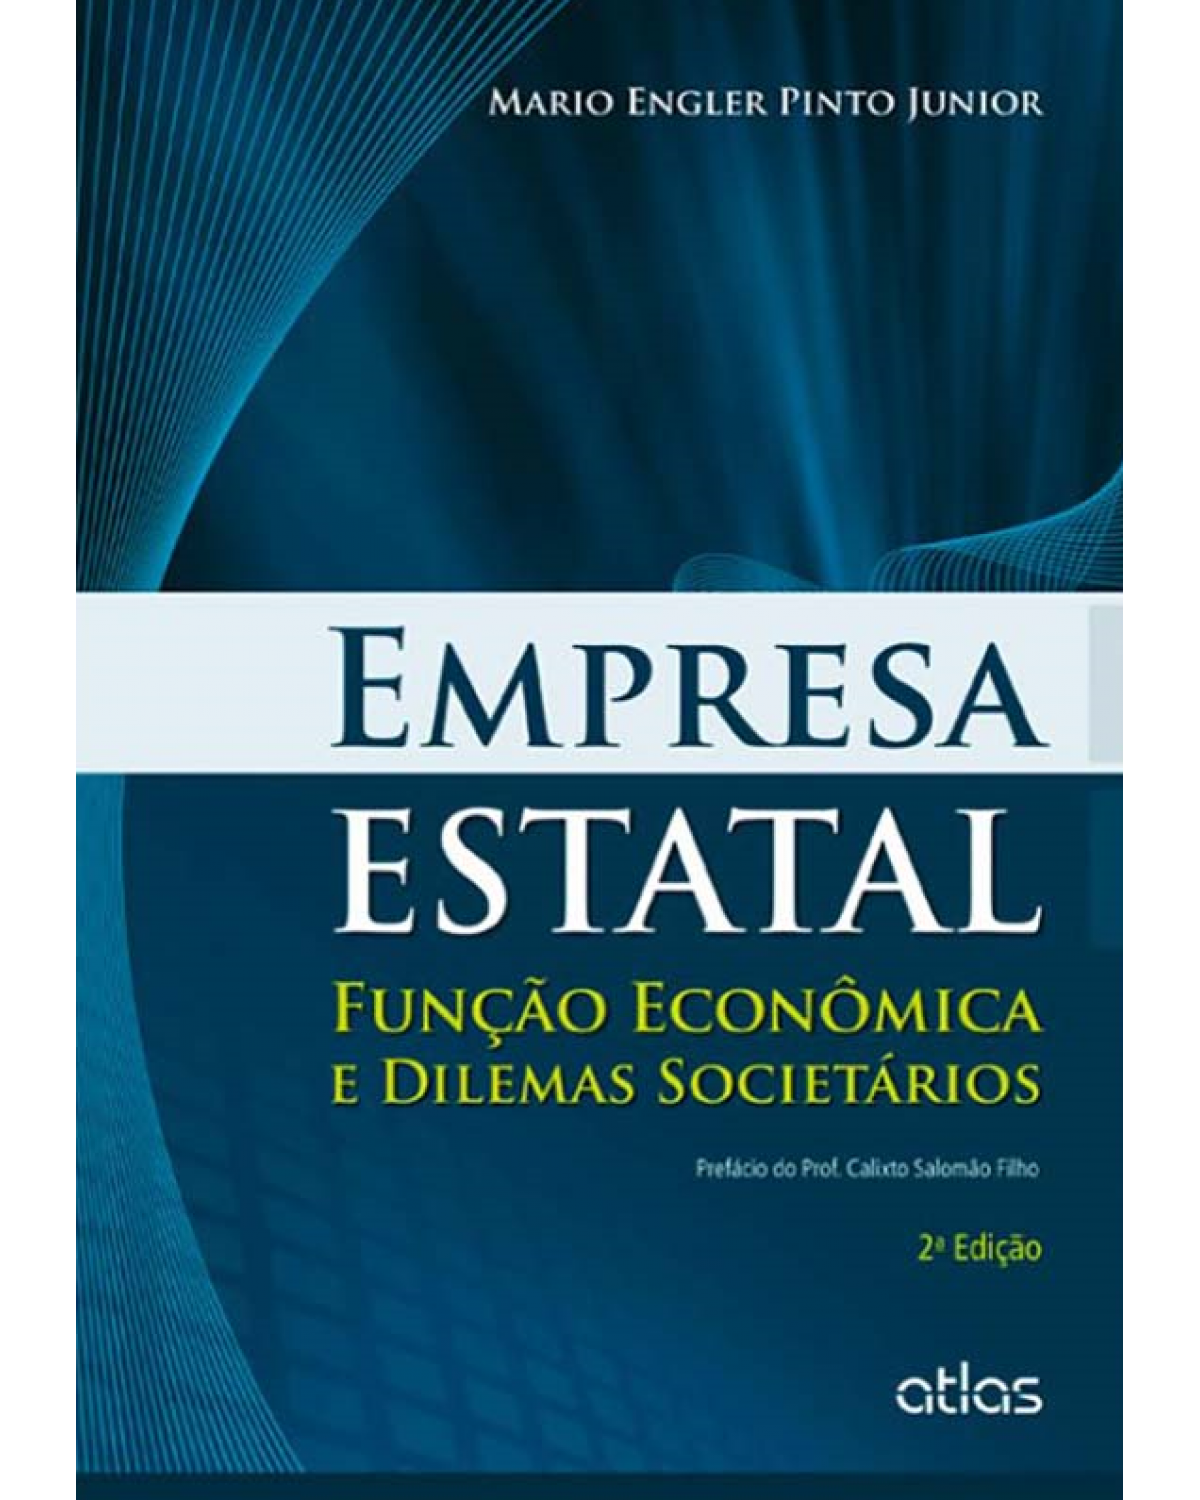 Empresa estatal - Função econômica e dilemas societários - 2ª Edição | 2013